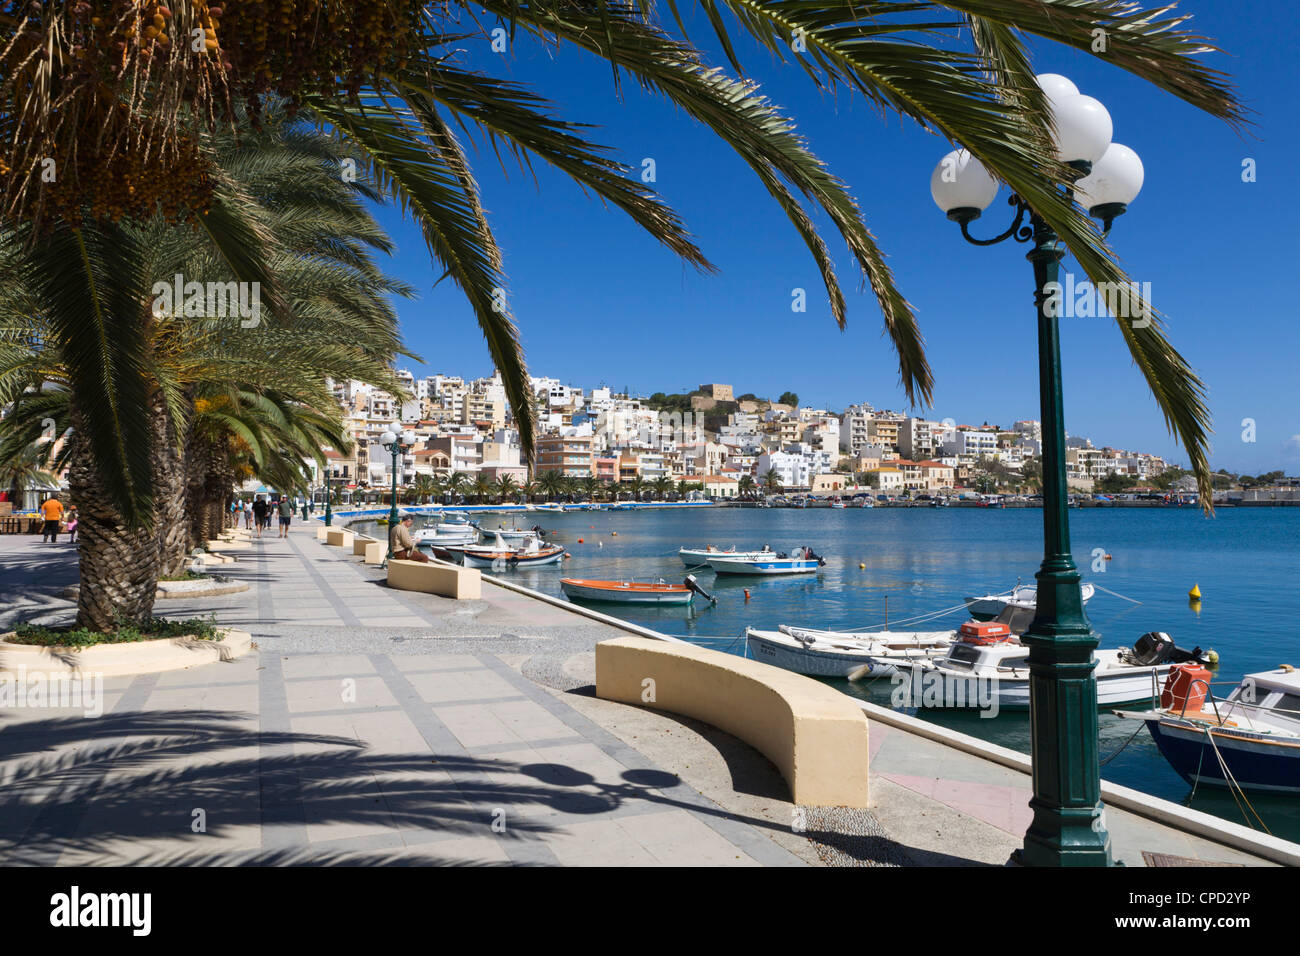 Le port, Sitia, λασίθι, Crète, îles grecques, Grèce, Europe Banque D'Images